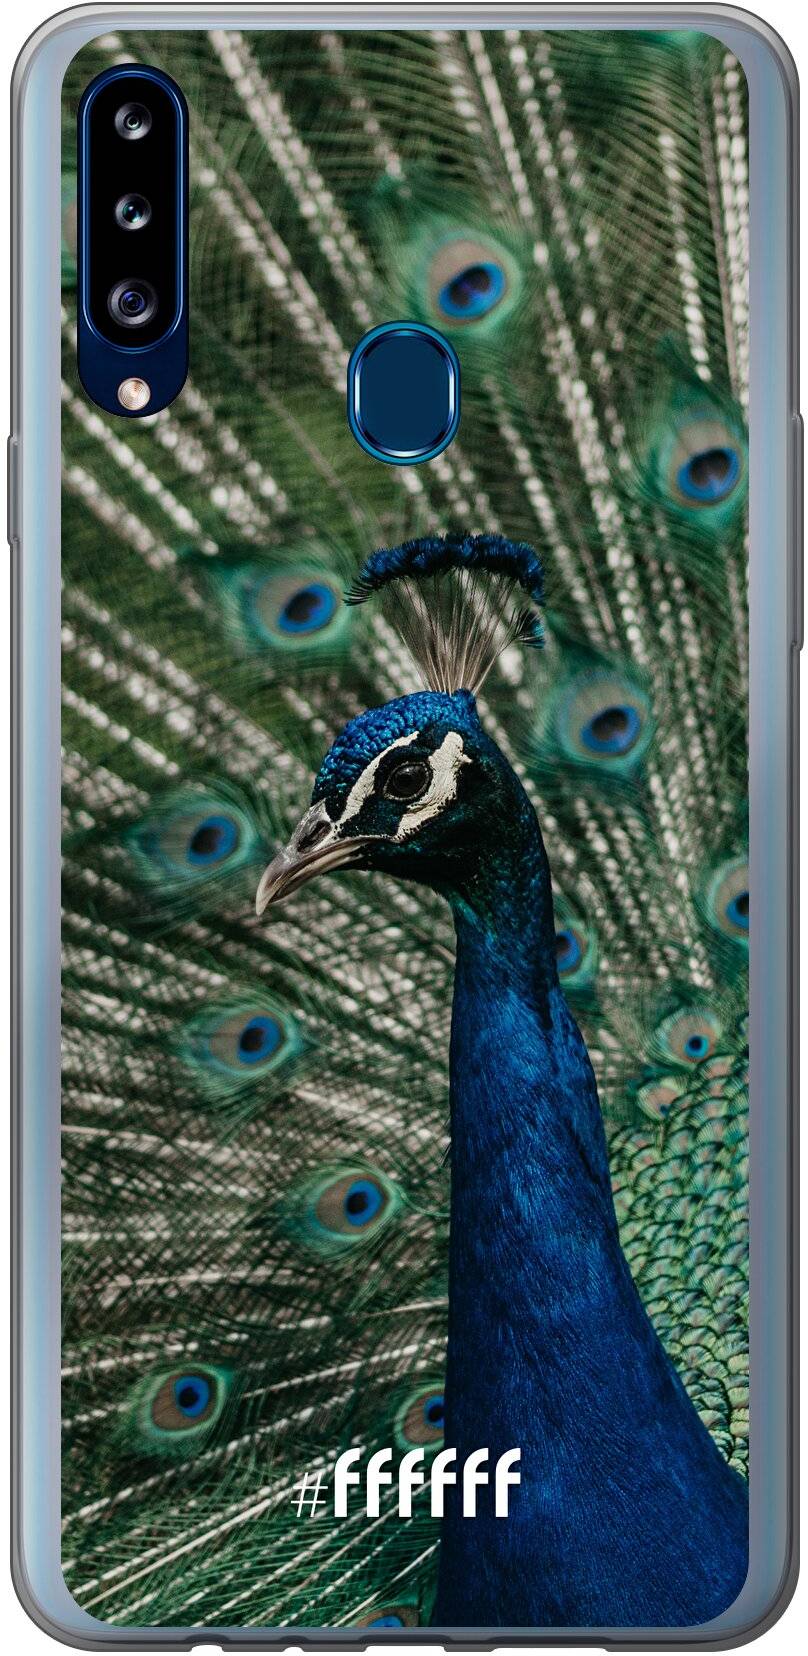 Peacock Galaxy A20s